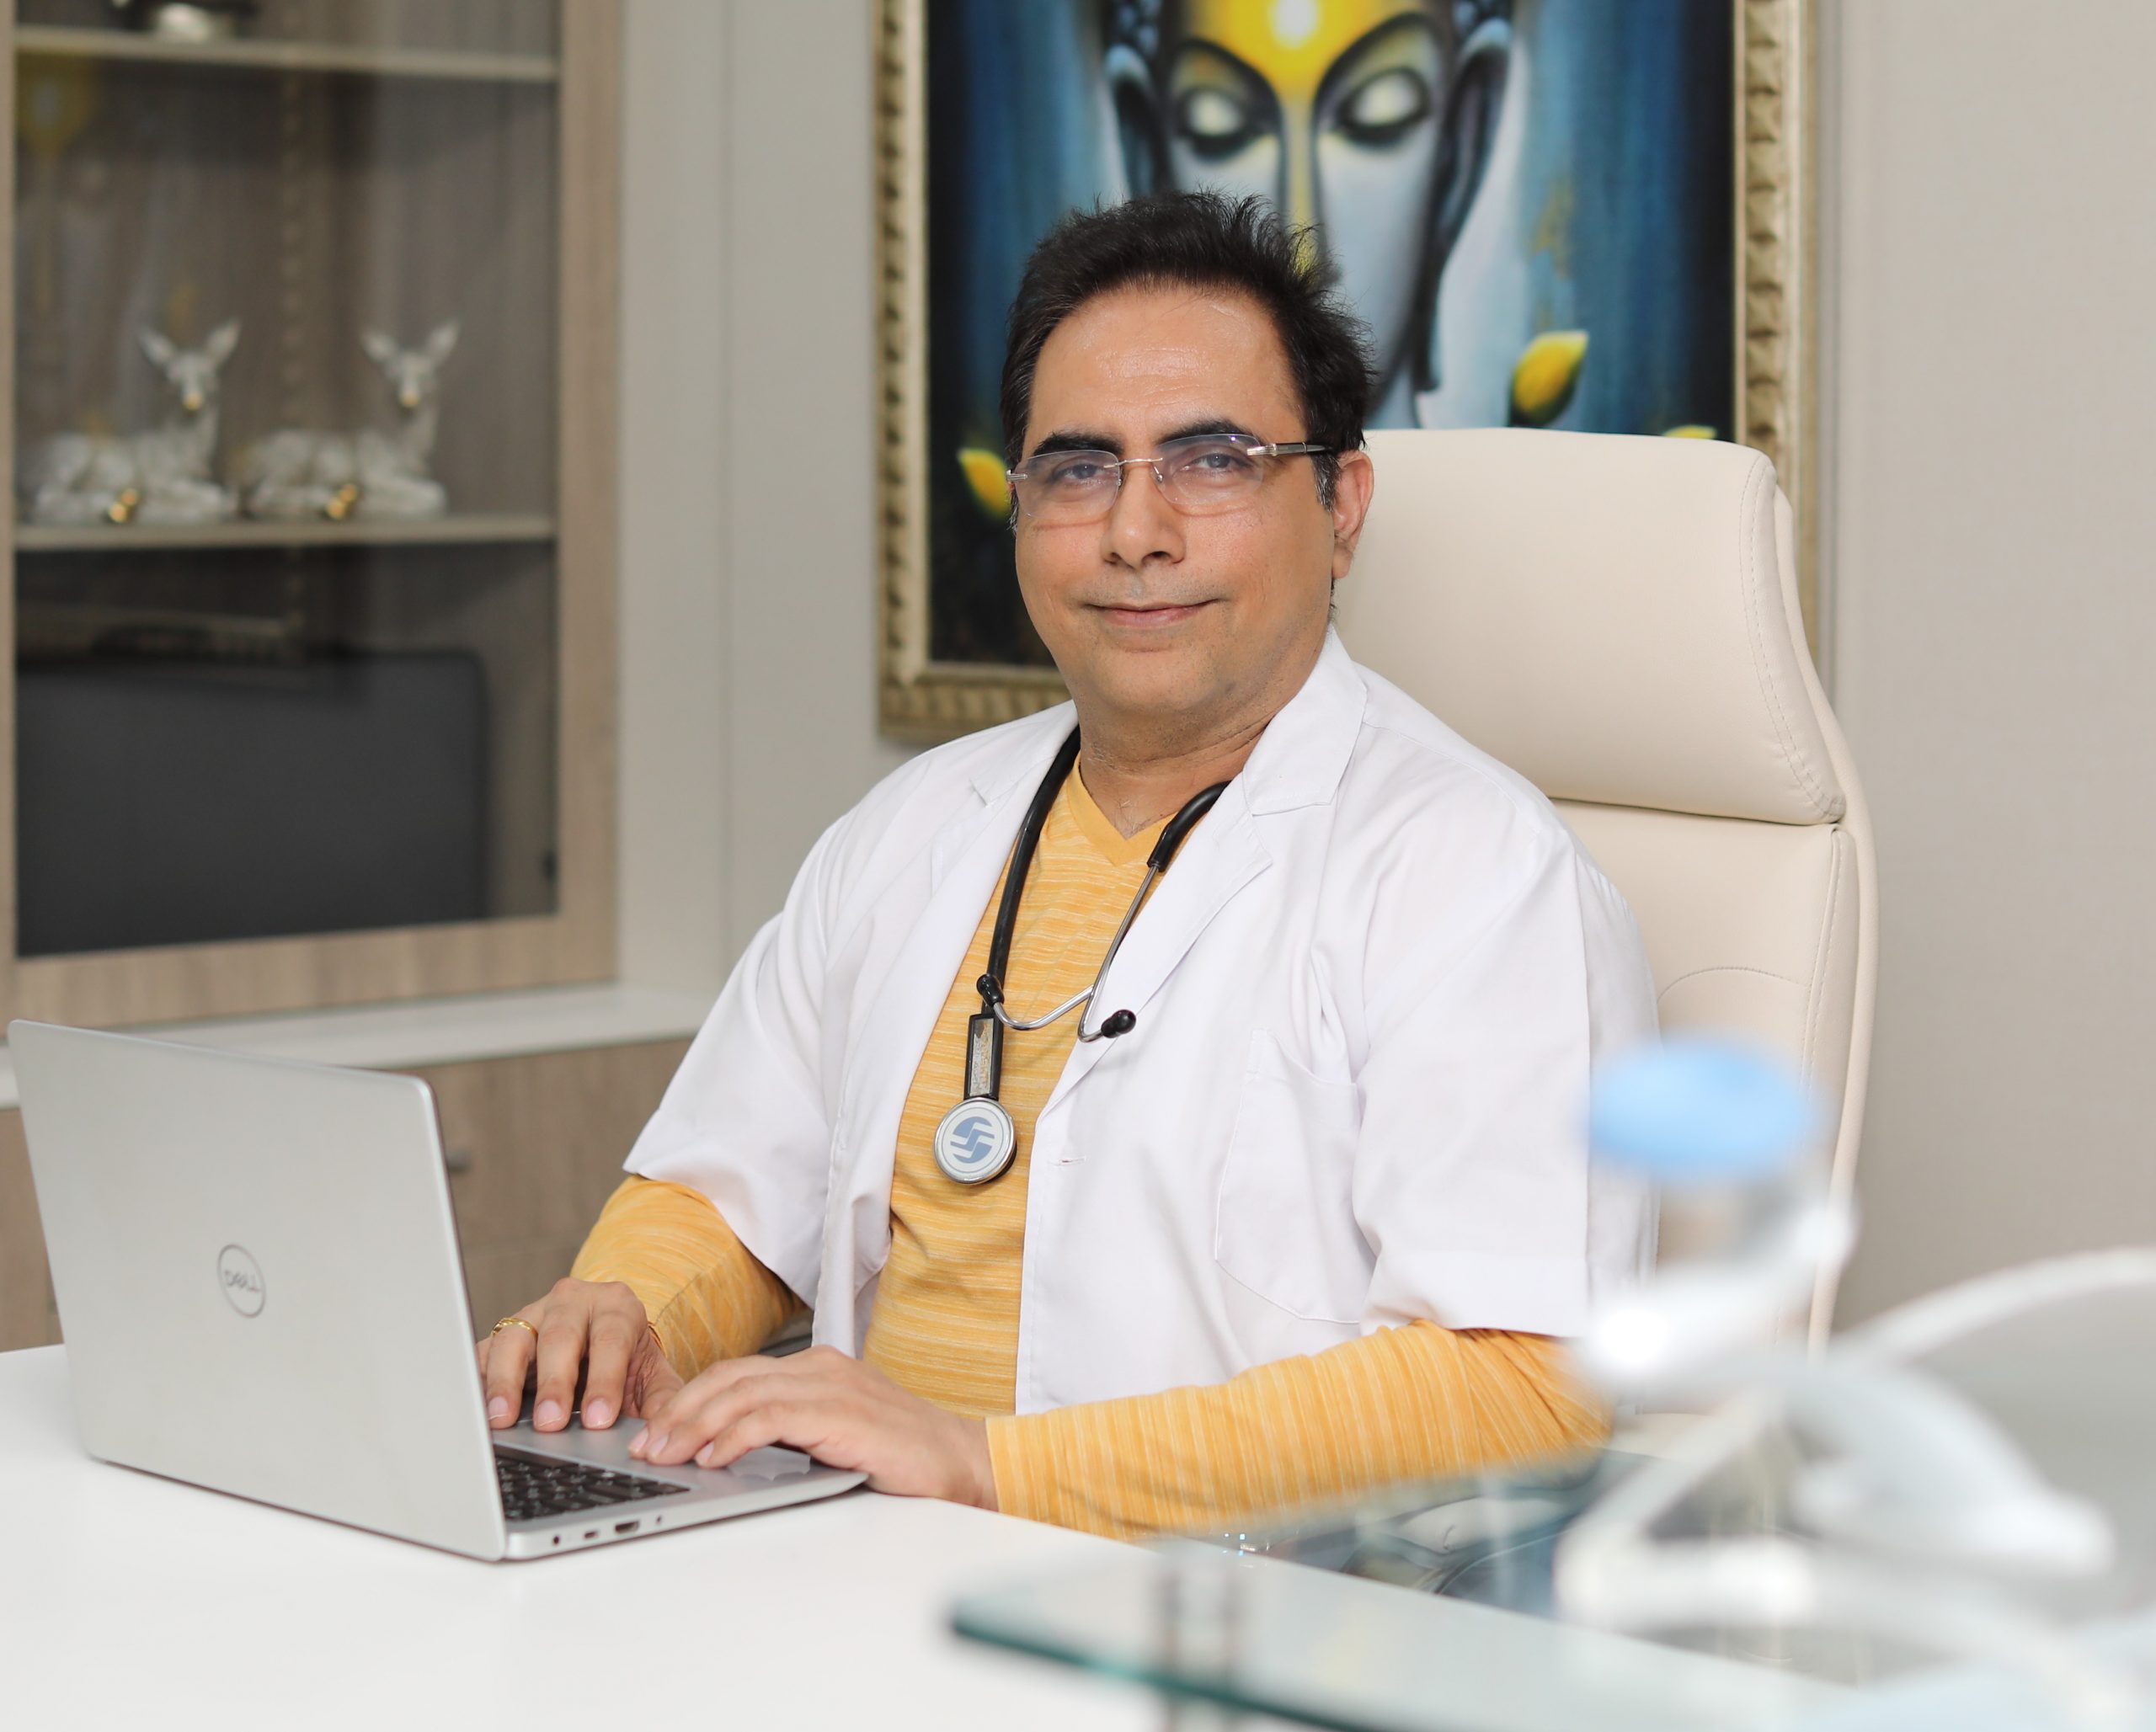 Dr Arvinder named among Top 10 Entrepreneurs of India